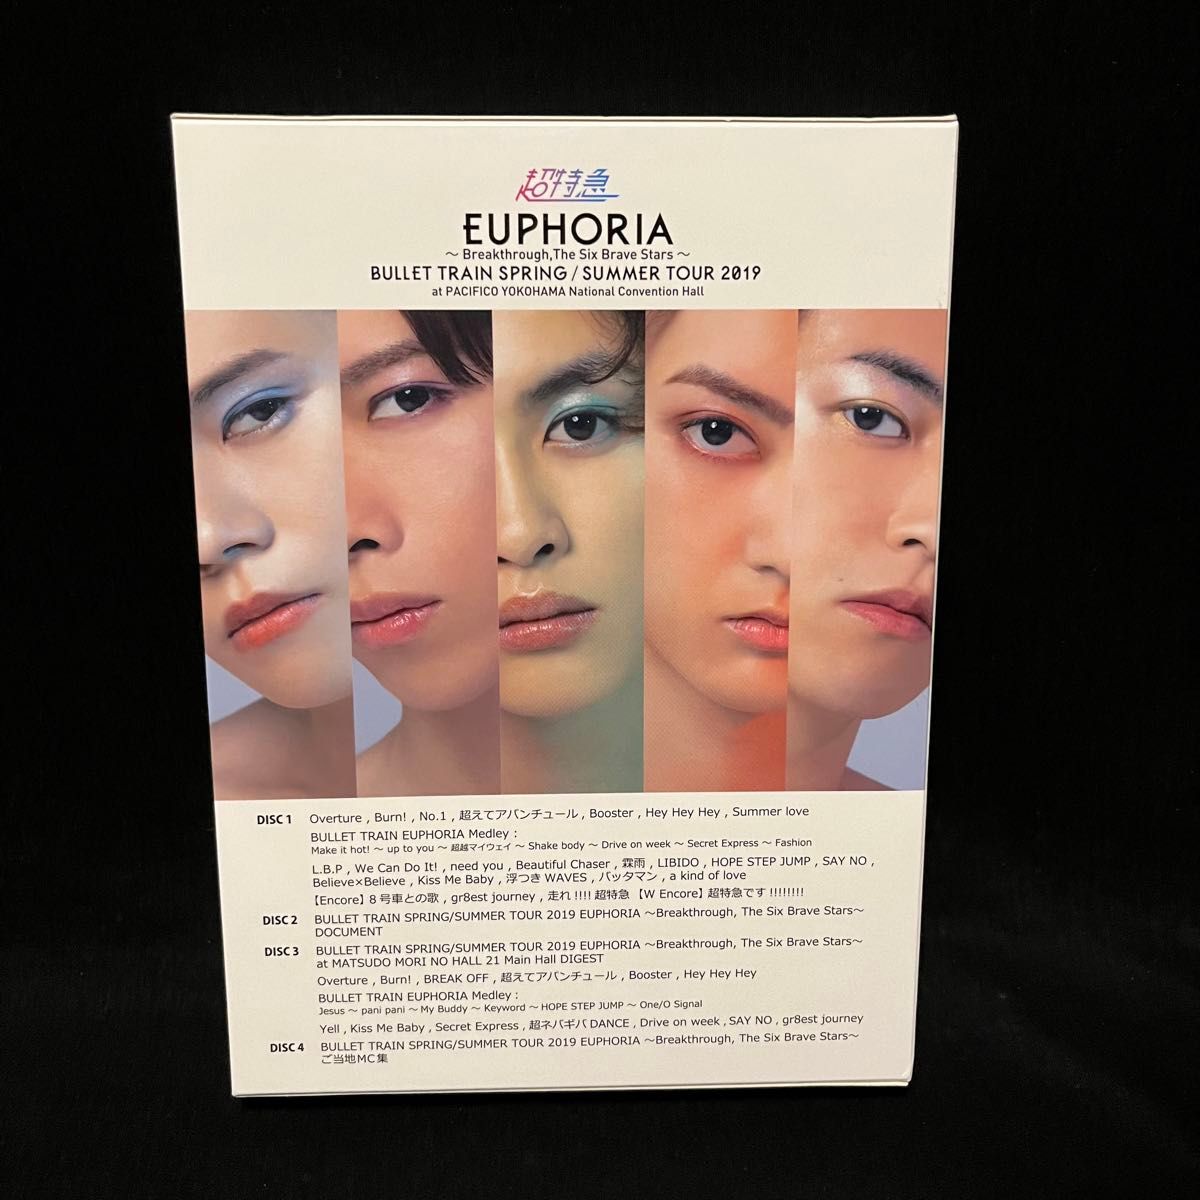 送料無料！超特急 EUPHORIA Blu-ray 4枚組 Loppi・HMV 限定盤 初回限定盤 ブルーレイ